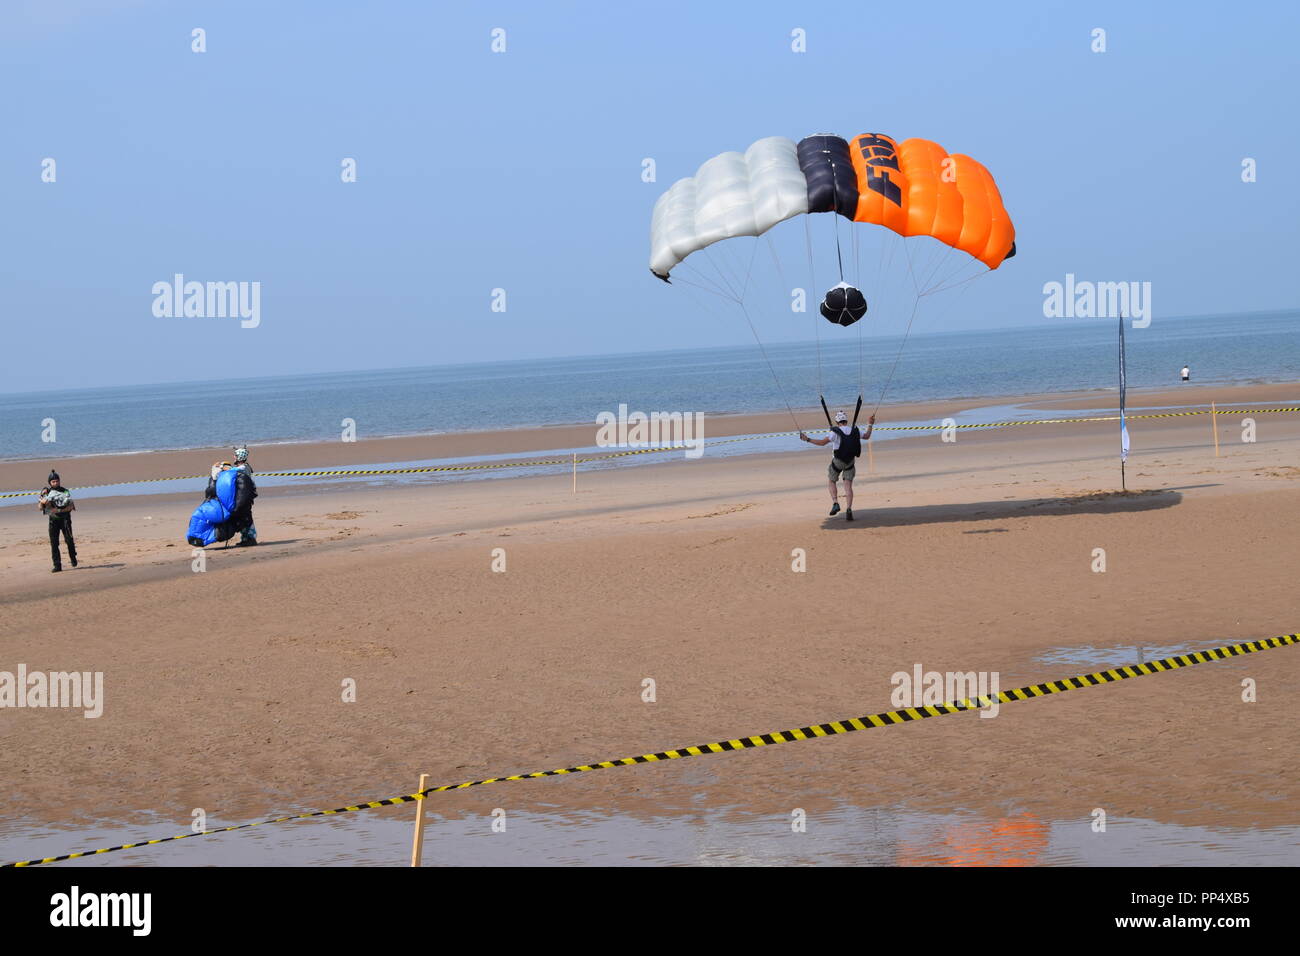 Una base jumping evento sulla spiaggia di Blackpool Inghilterra uk atterraggio con il paracadute sulla spiaggia di sabbia fine e dorata. Un bel blu del cielo e del mare Foto Stock